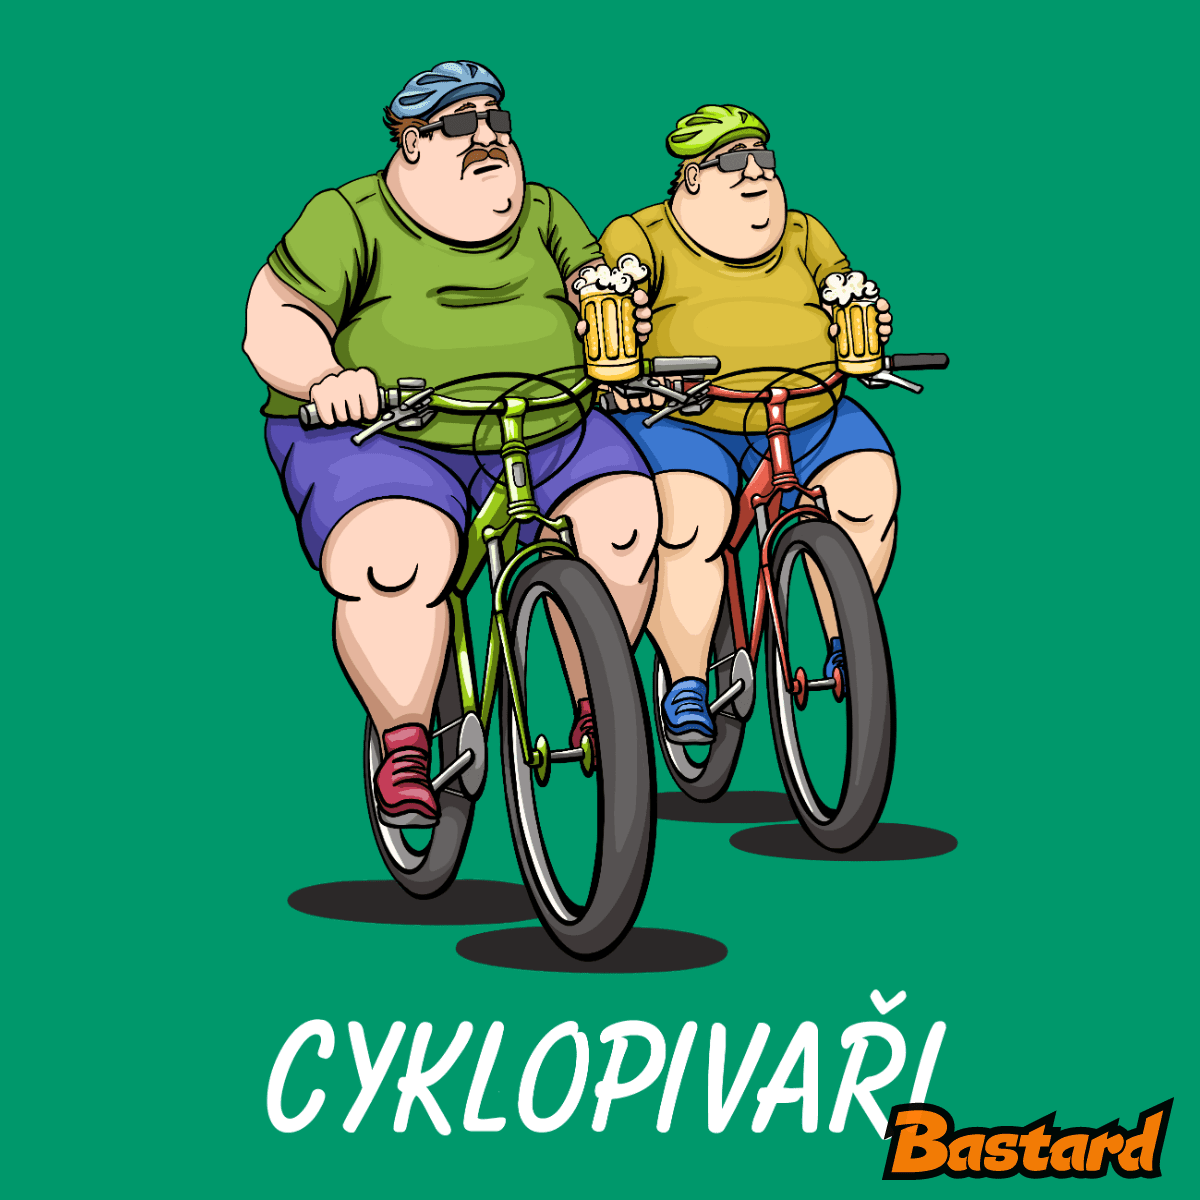 Cyklopivaři